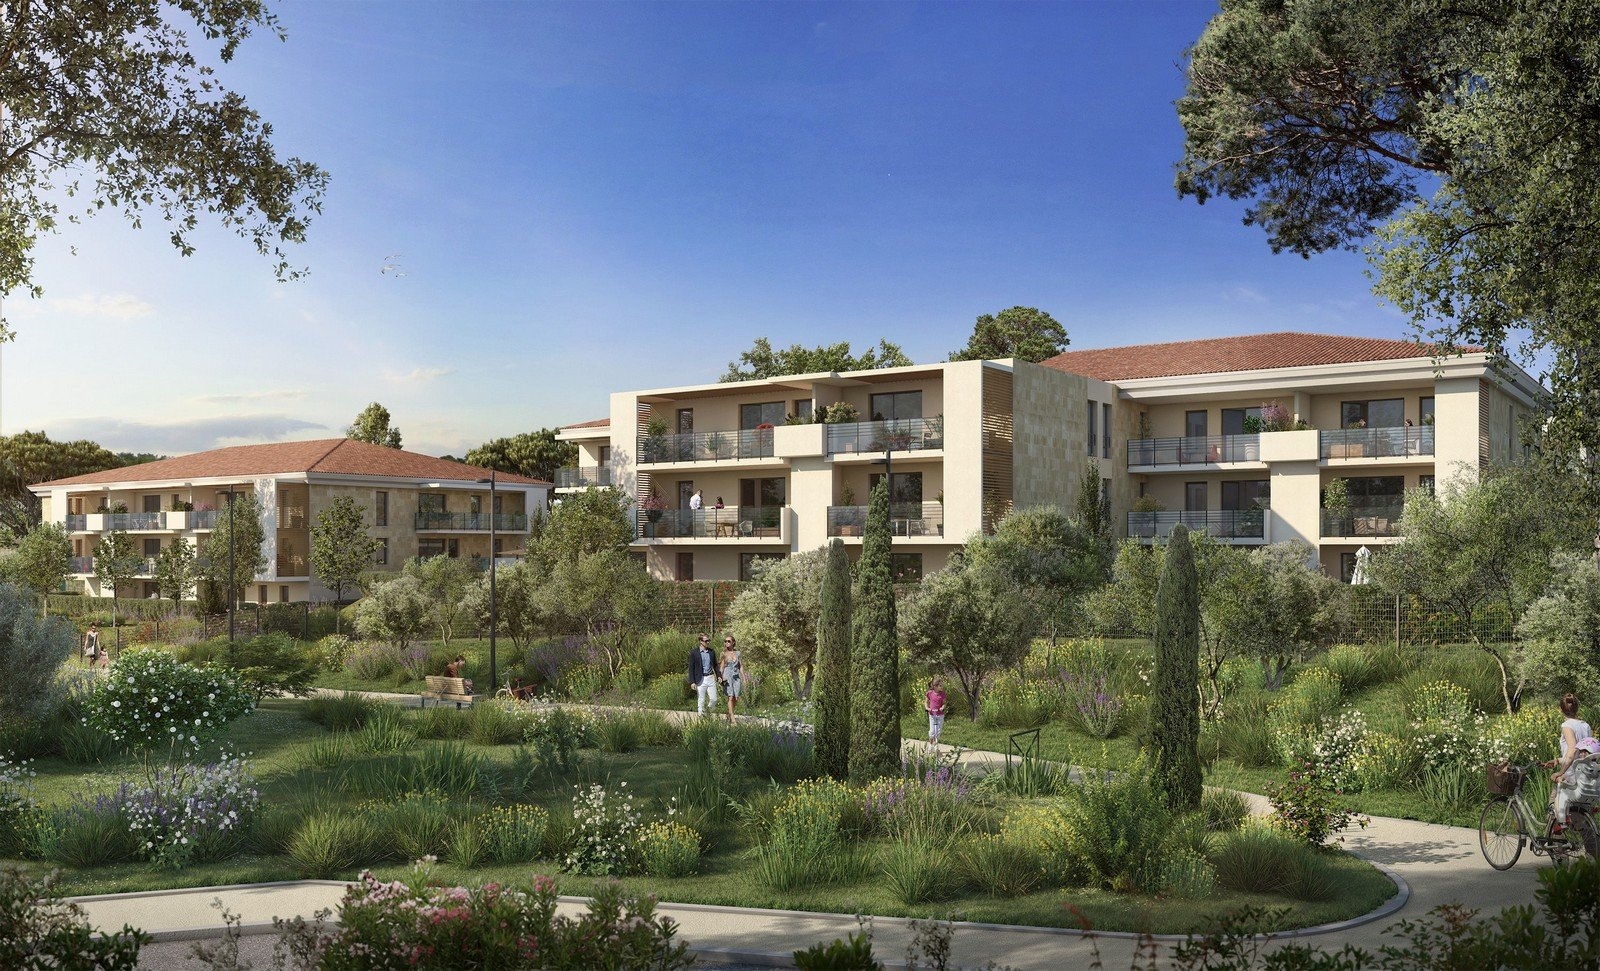 Résidence à Aix-en-Provence A 3km du centre-ville, Tous les appartements bénéficient d'espaces extérieurs, ,